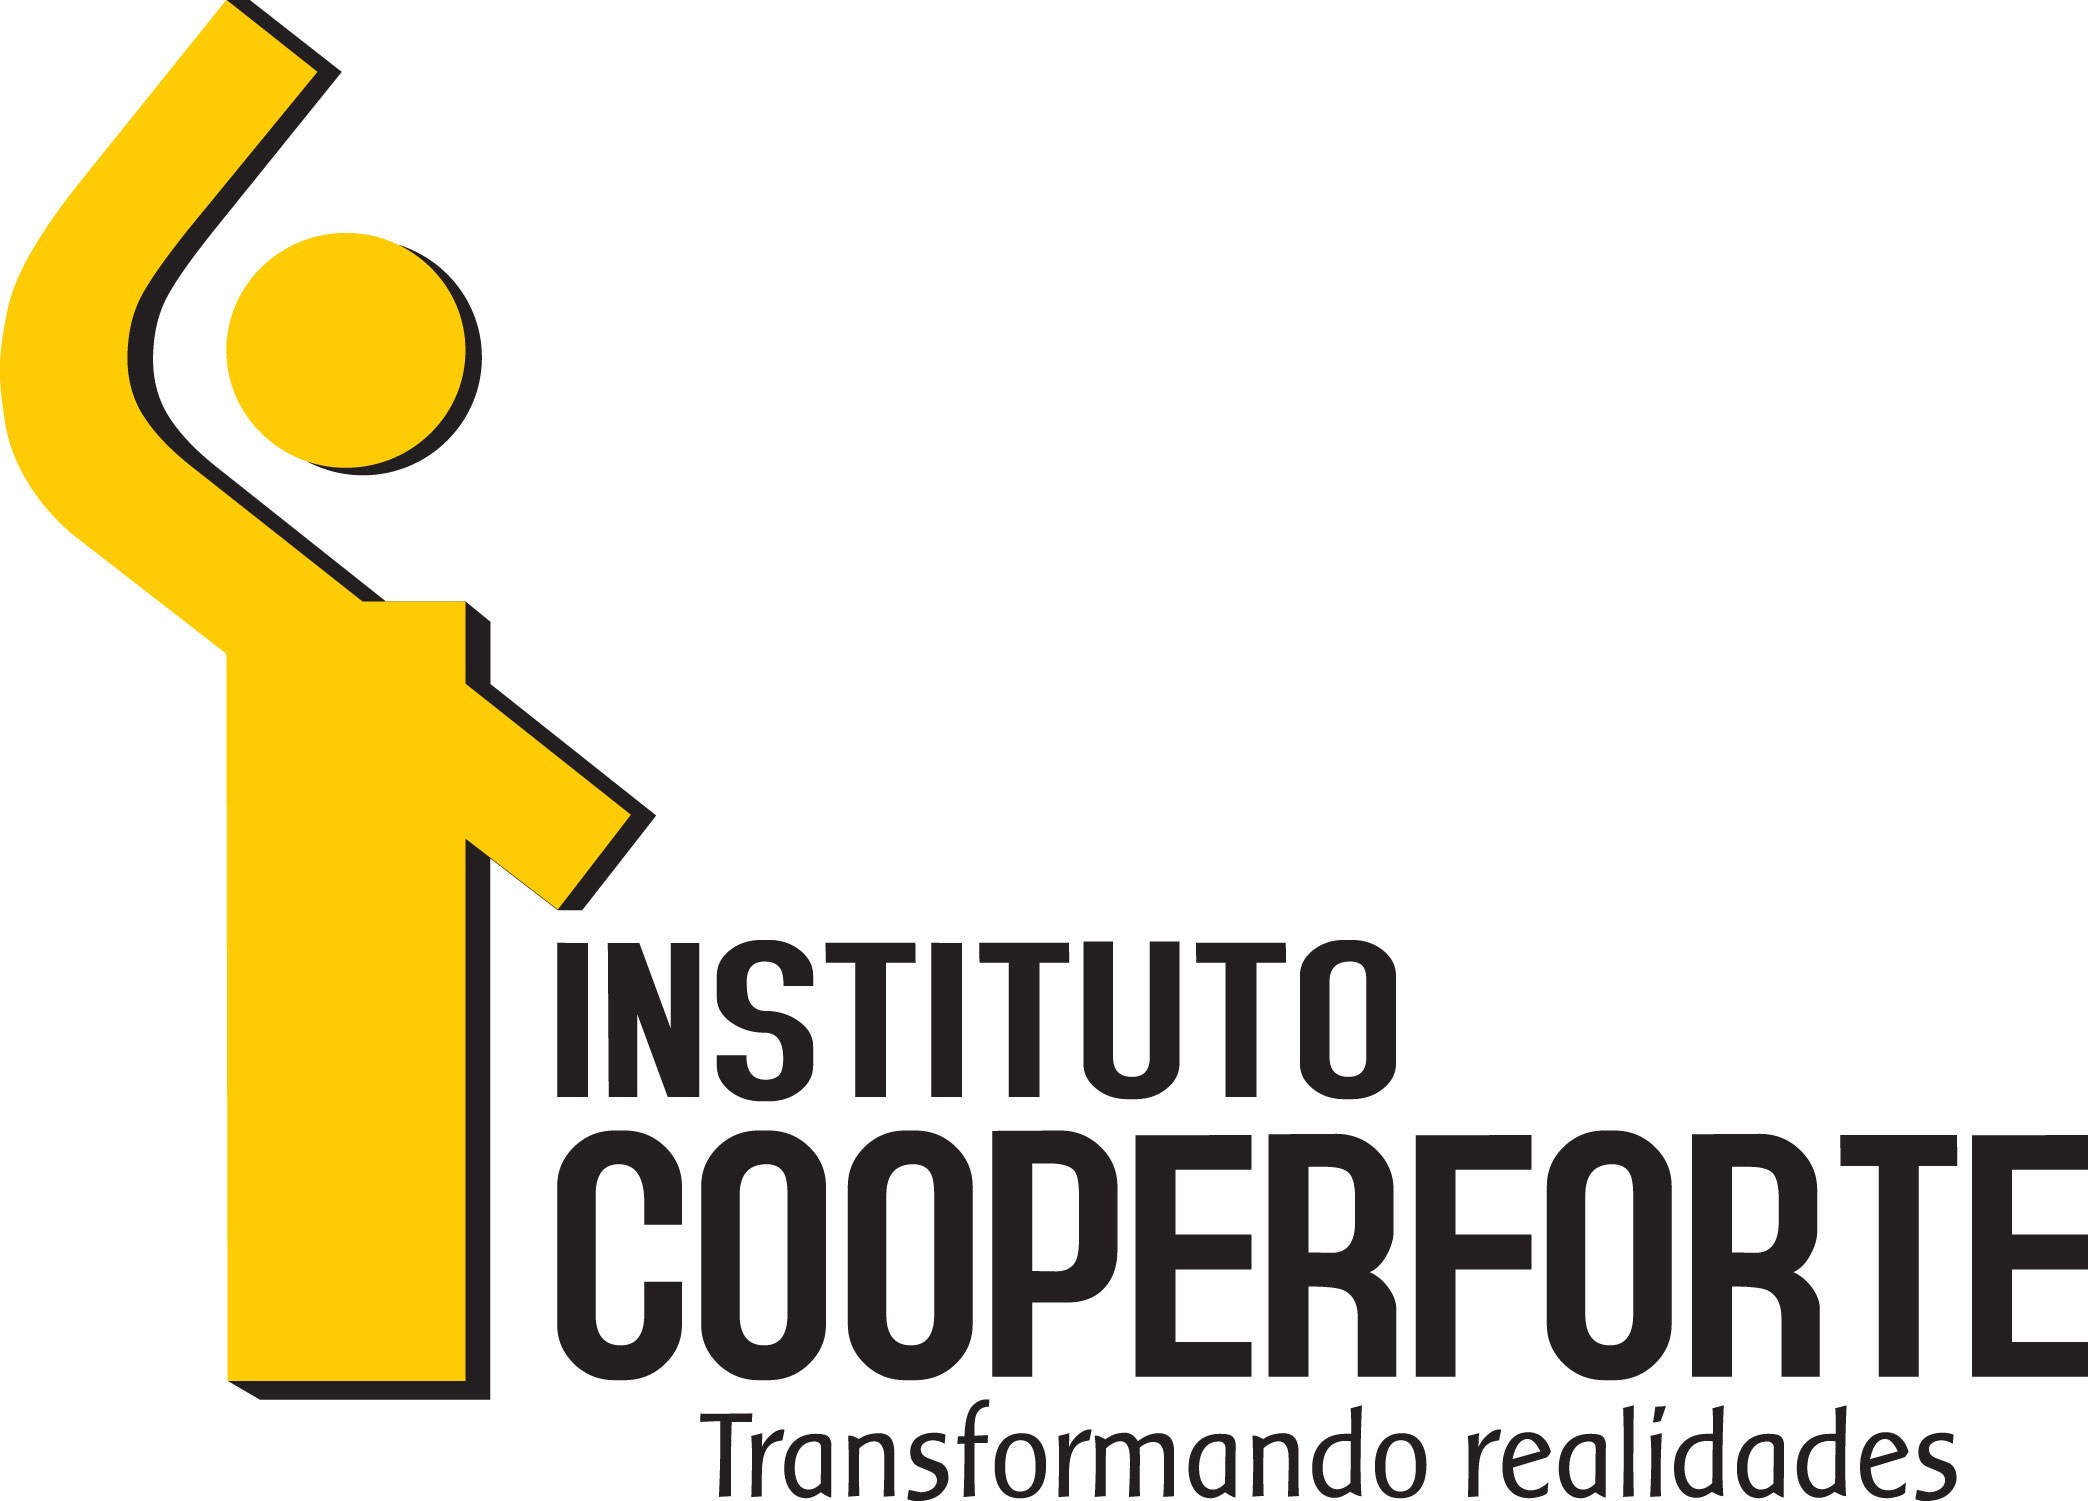 Instituto Cooperforte 